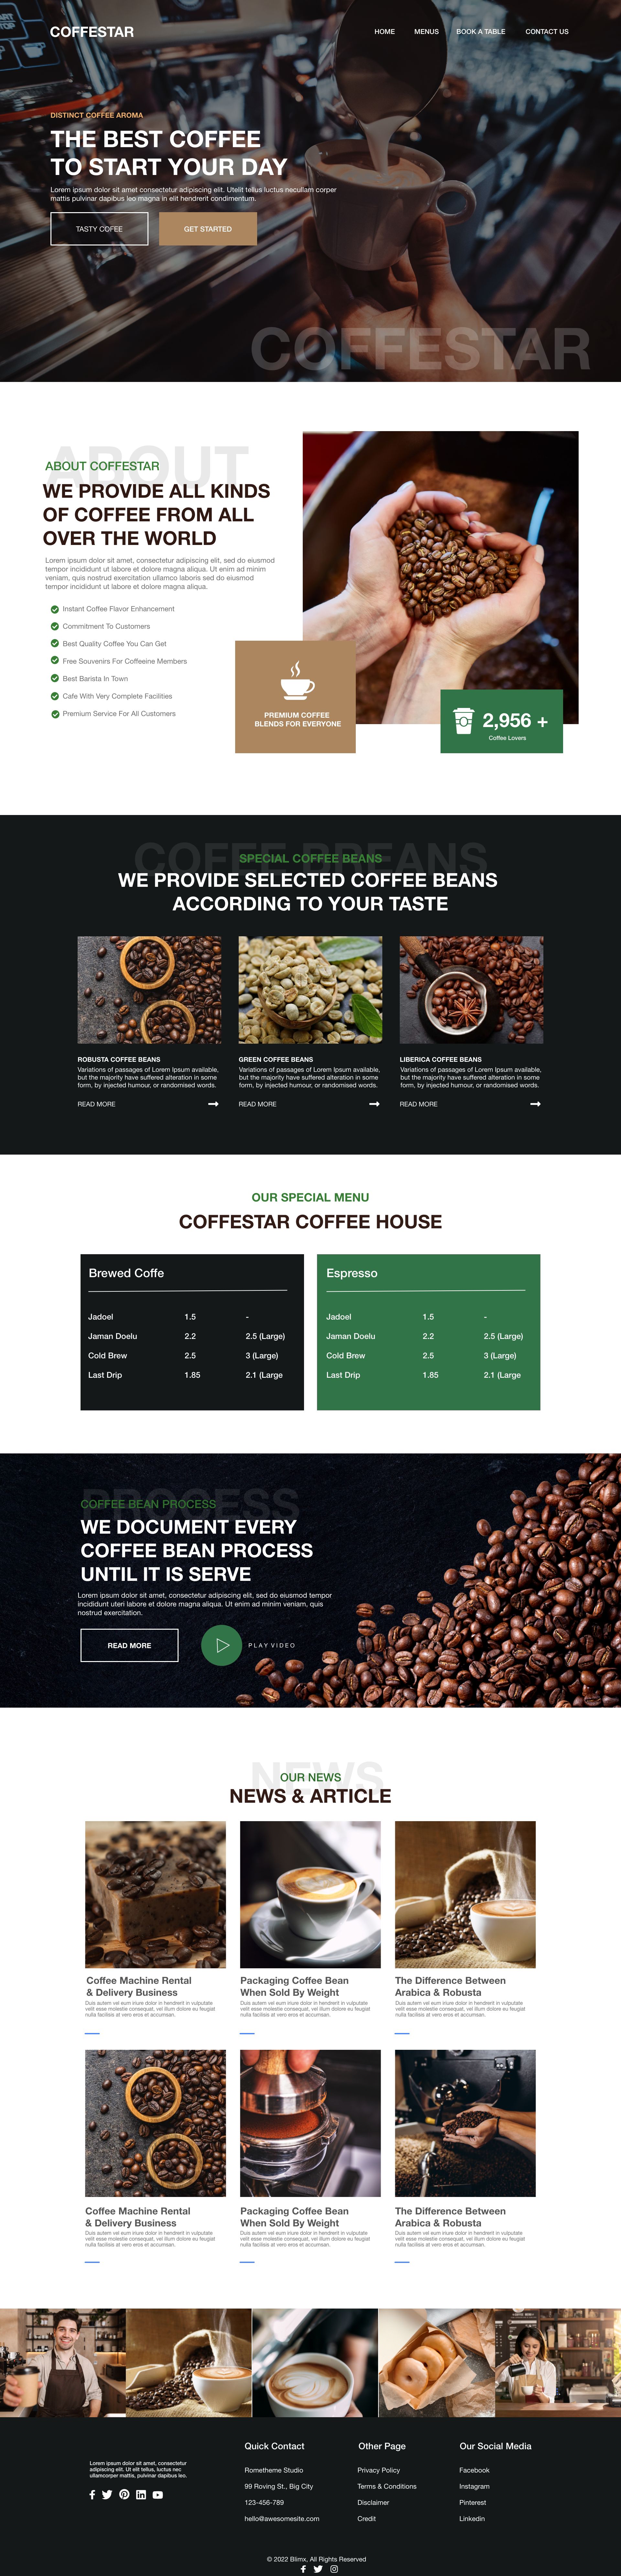 Cafe & Coffee Website Design